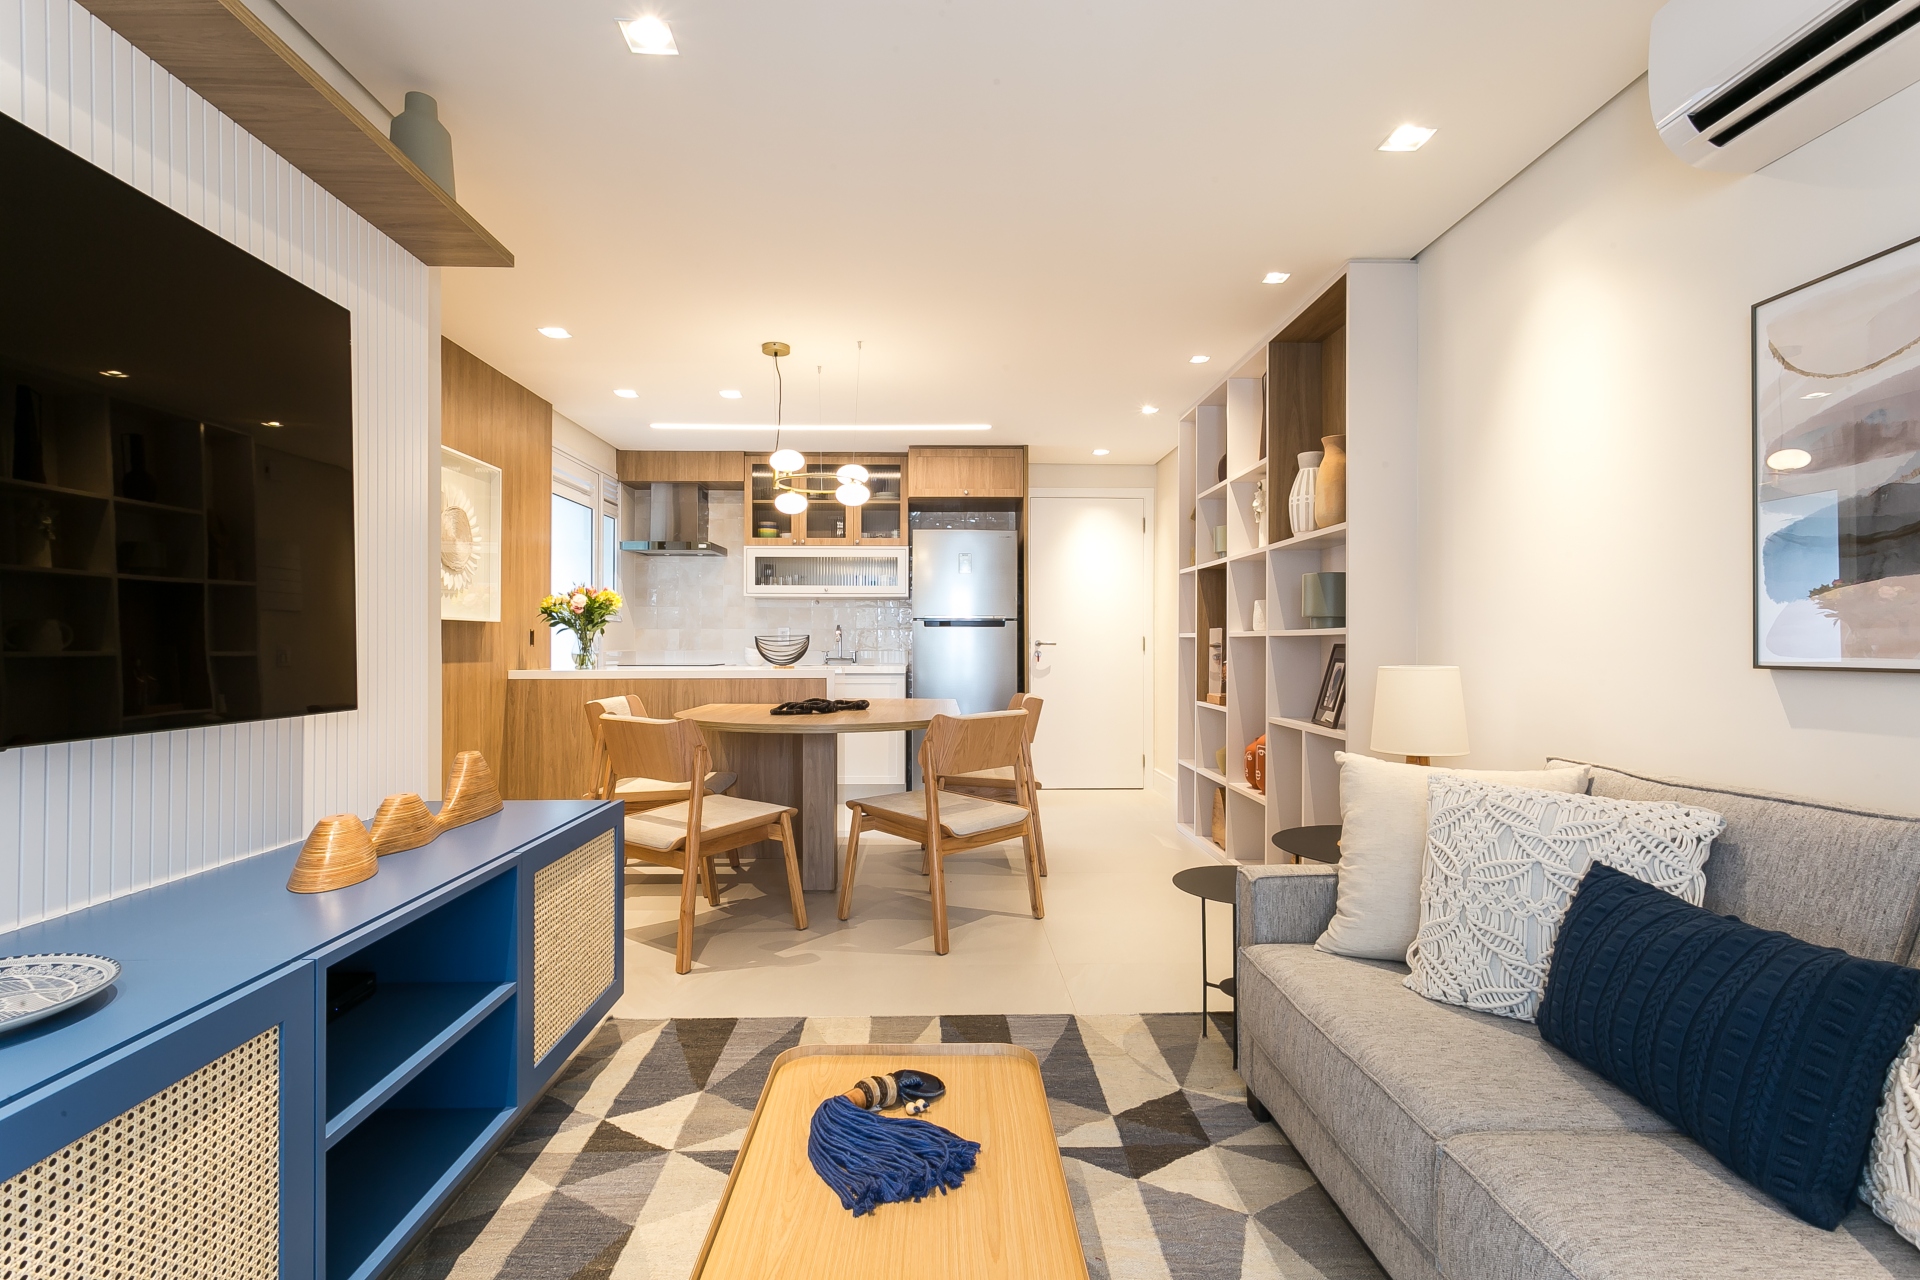 Apartamento com conceito aberto, integrando sala e cozinha, em tons claros e poucos elementos em azul que se destacam